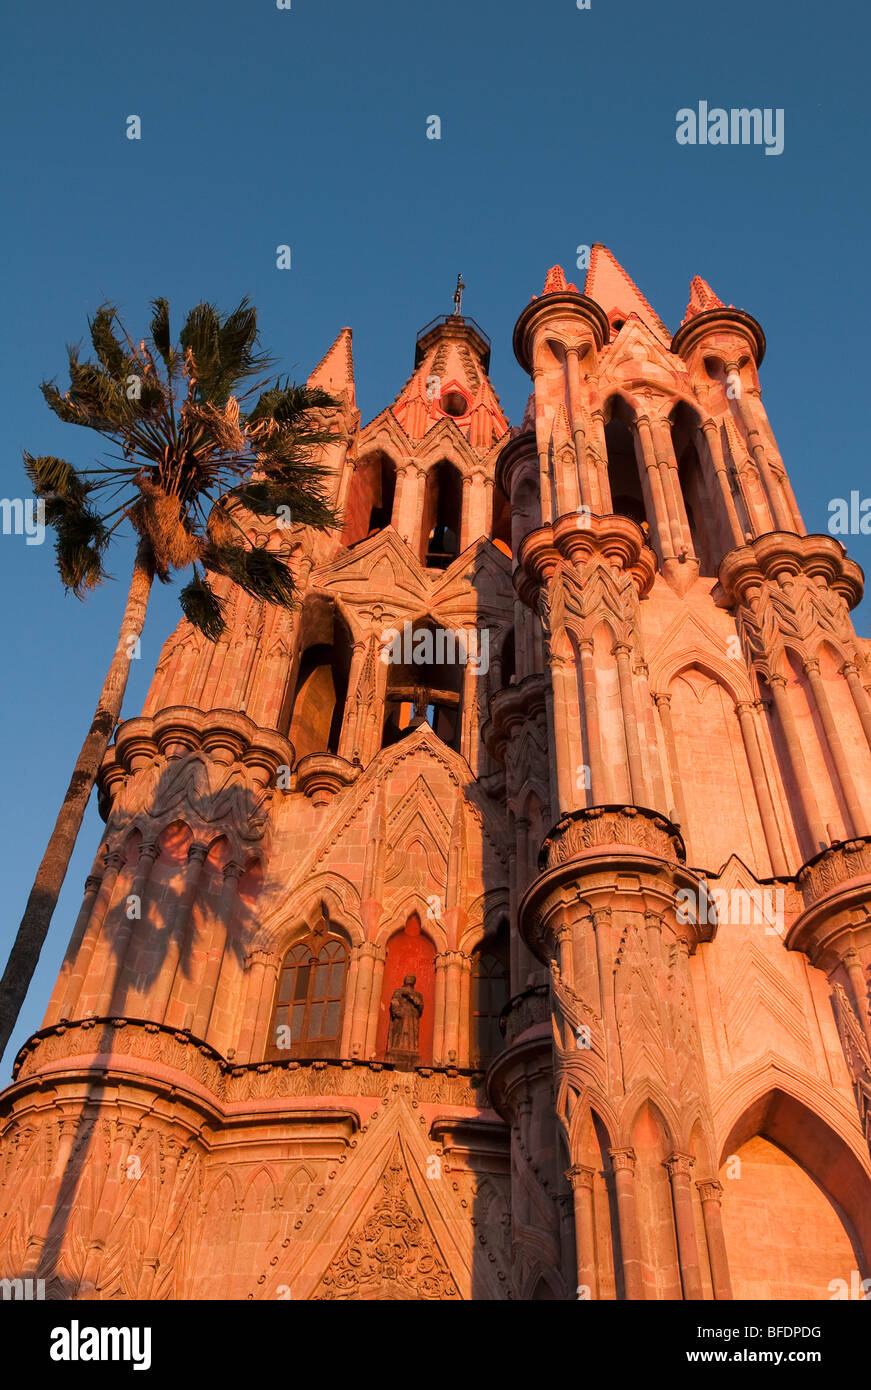 La Parroquia, the famous parish church of San Miguel de Allende, Guanajuato, Mexico. Stock Photo